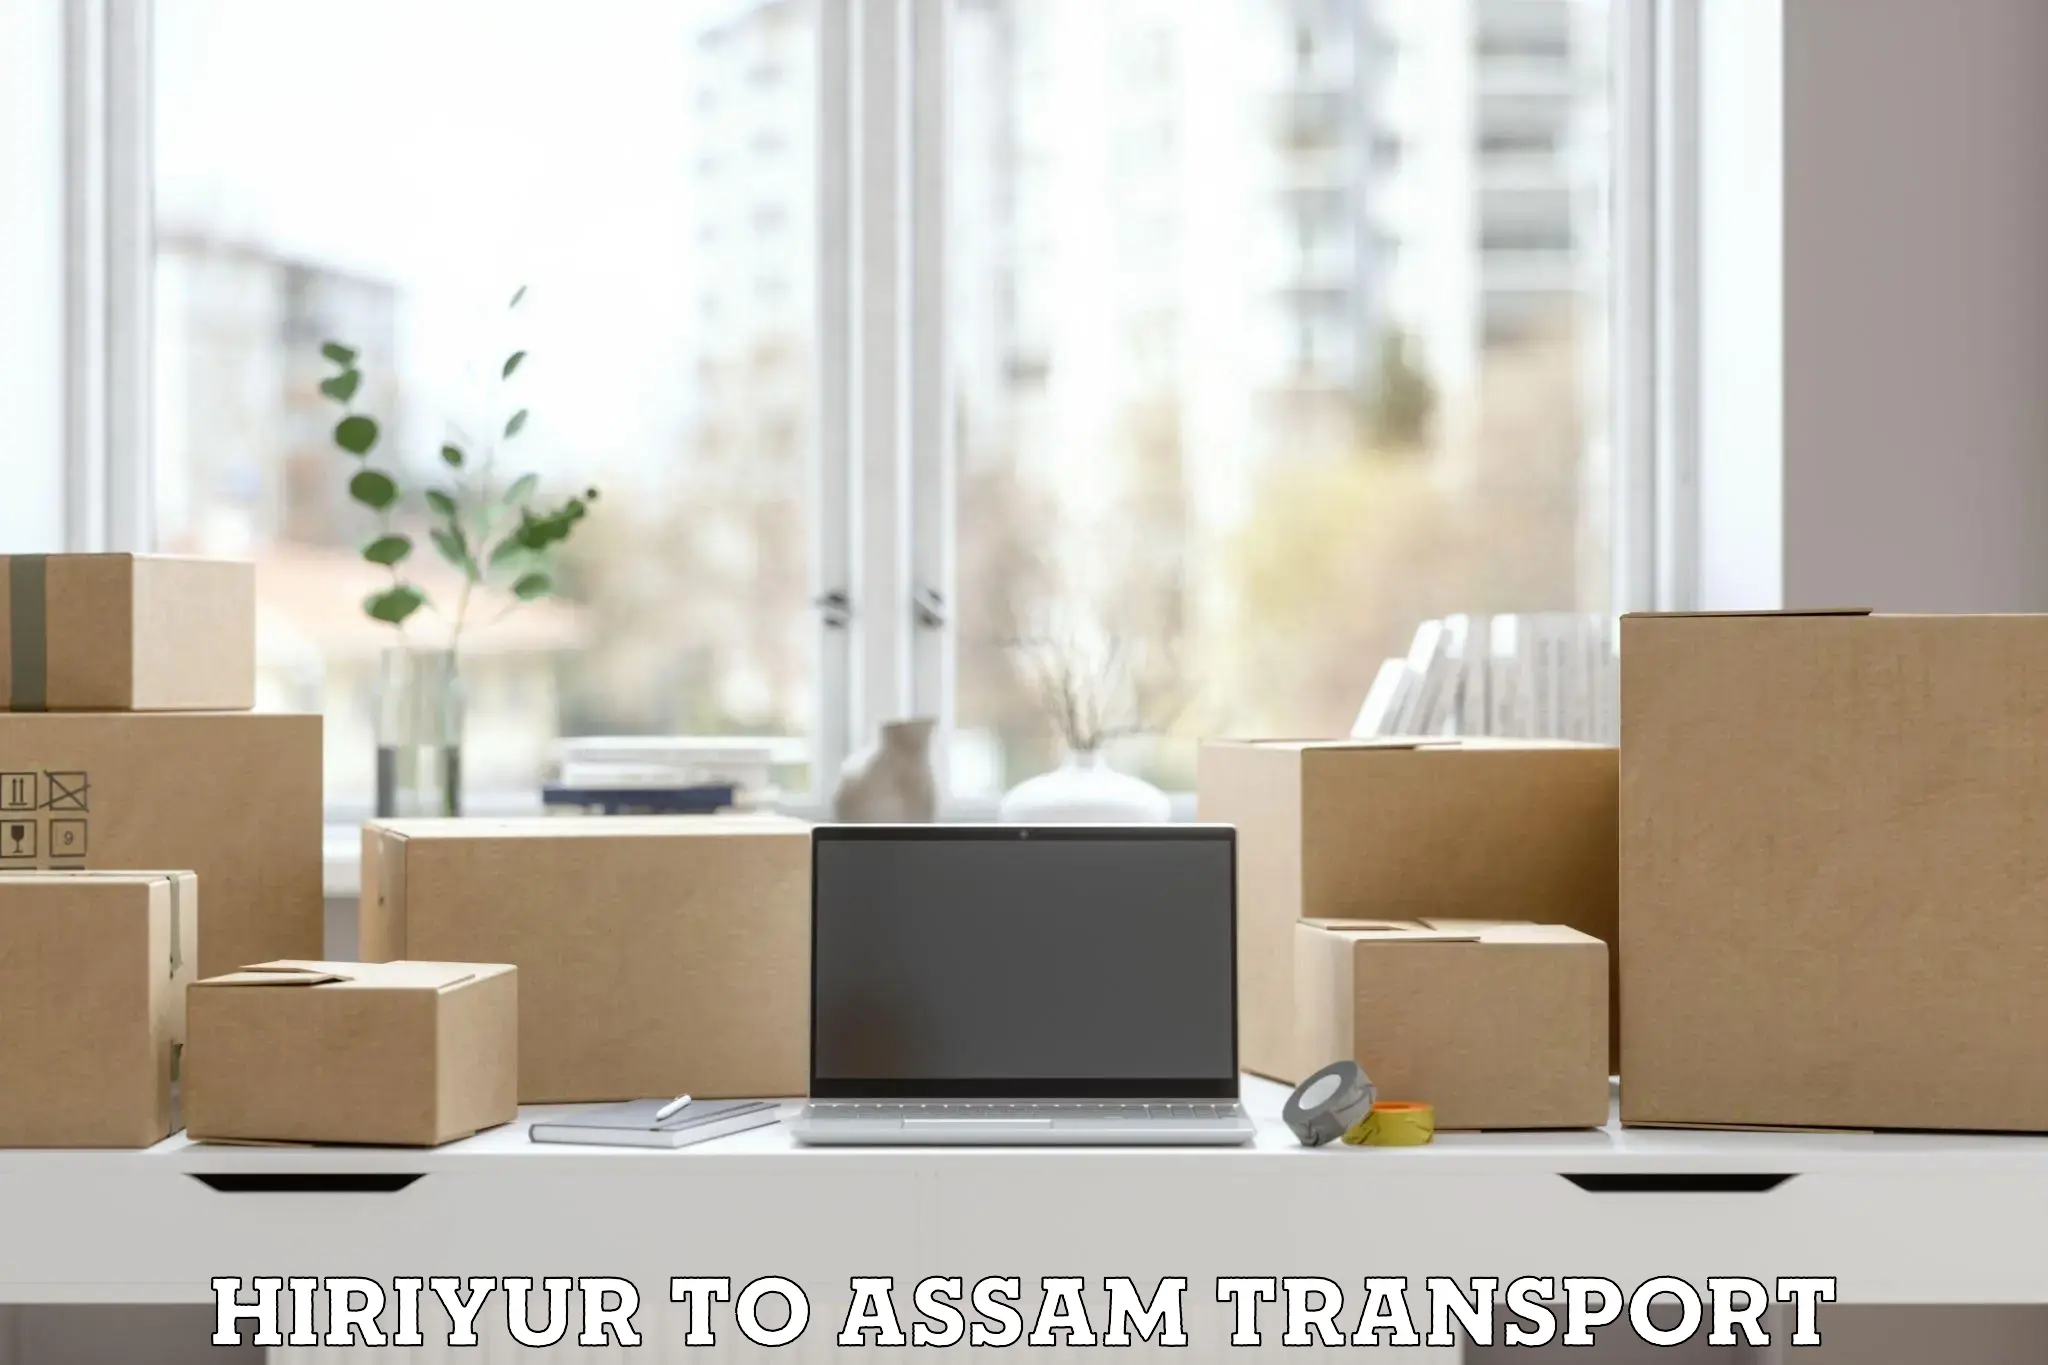 Furniture transport service Hiriyur to Manikpur Bongaigaon